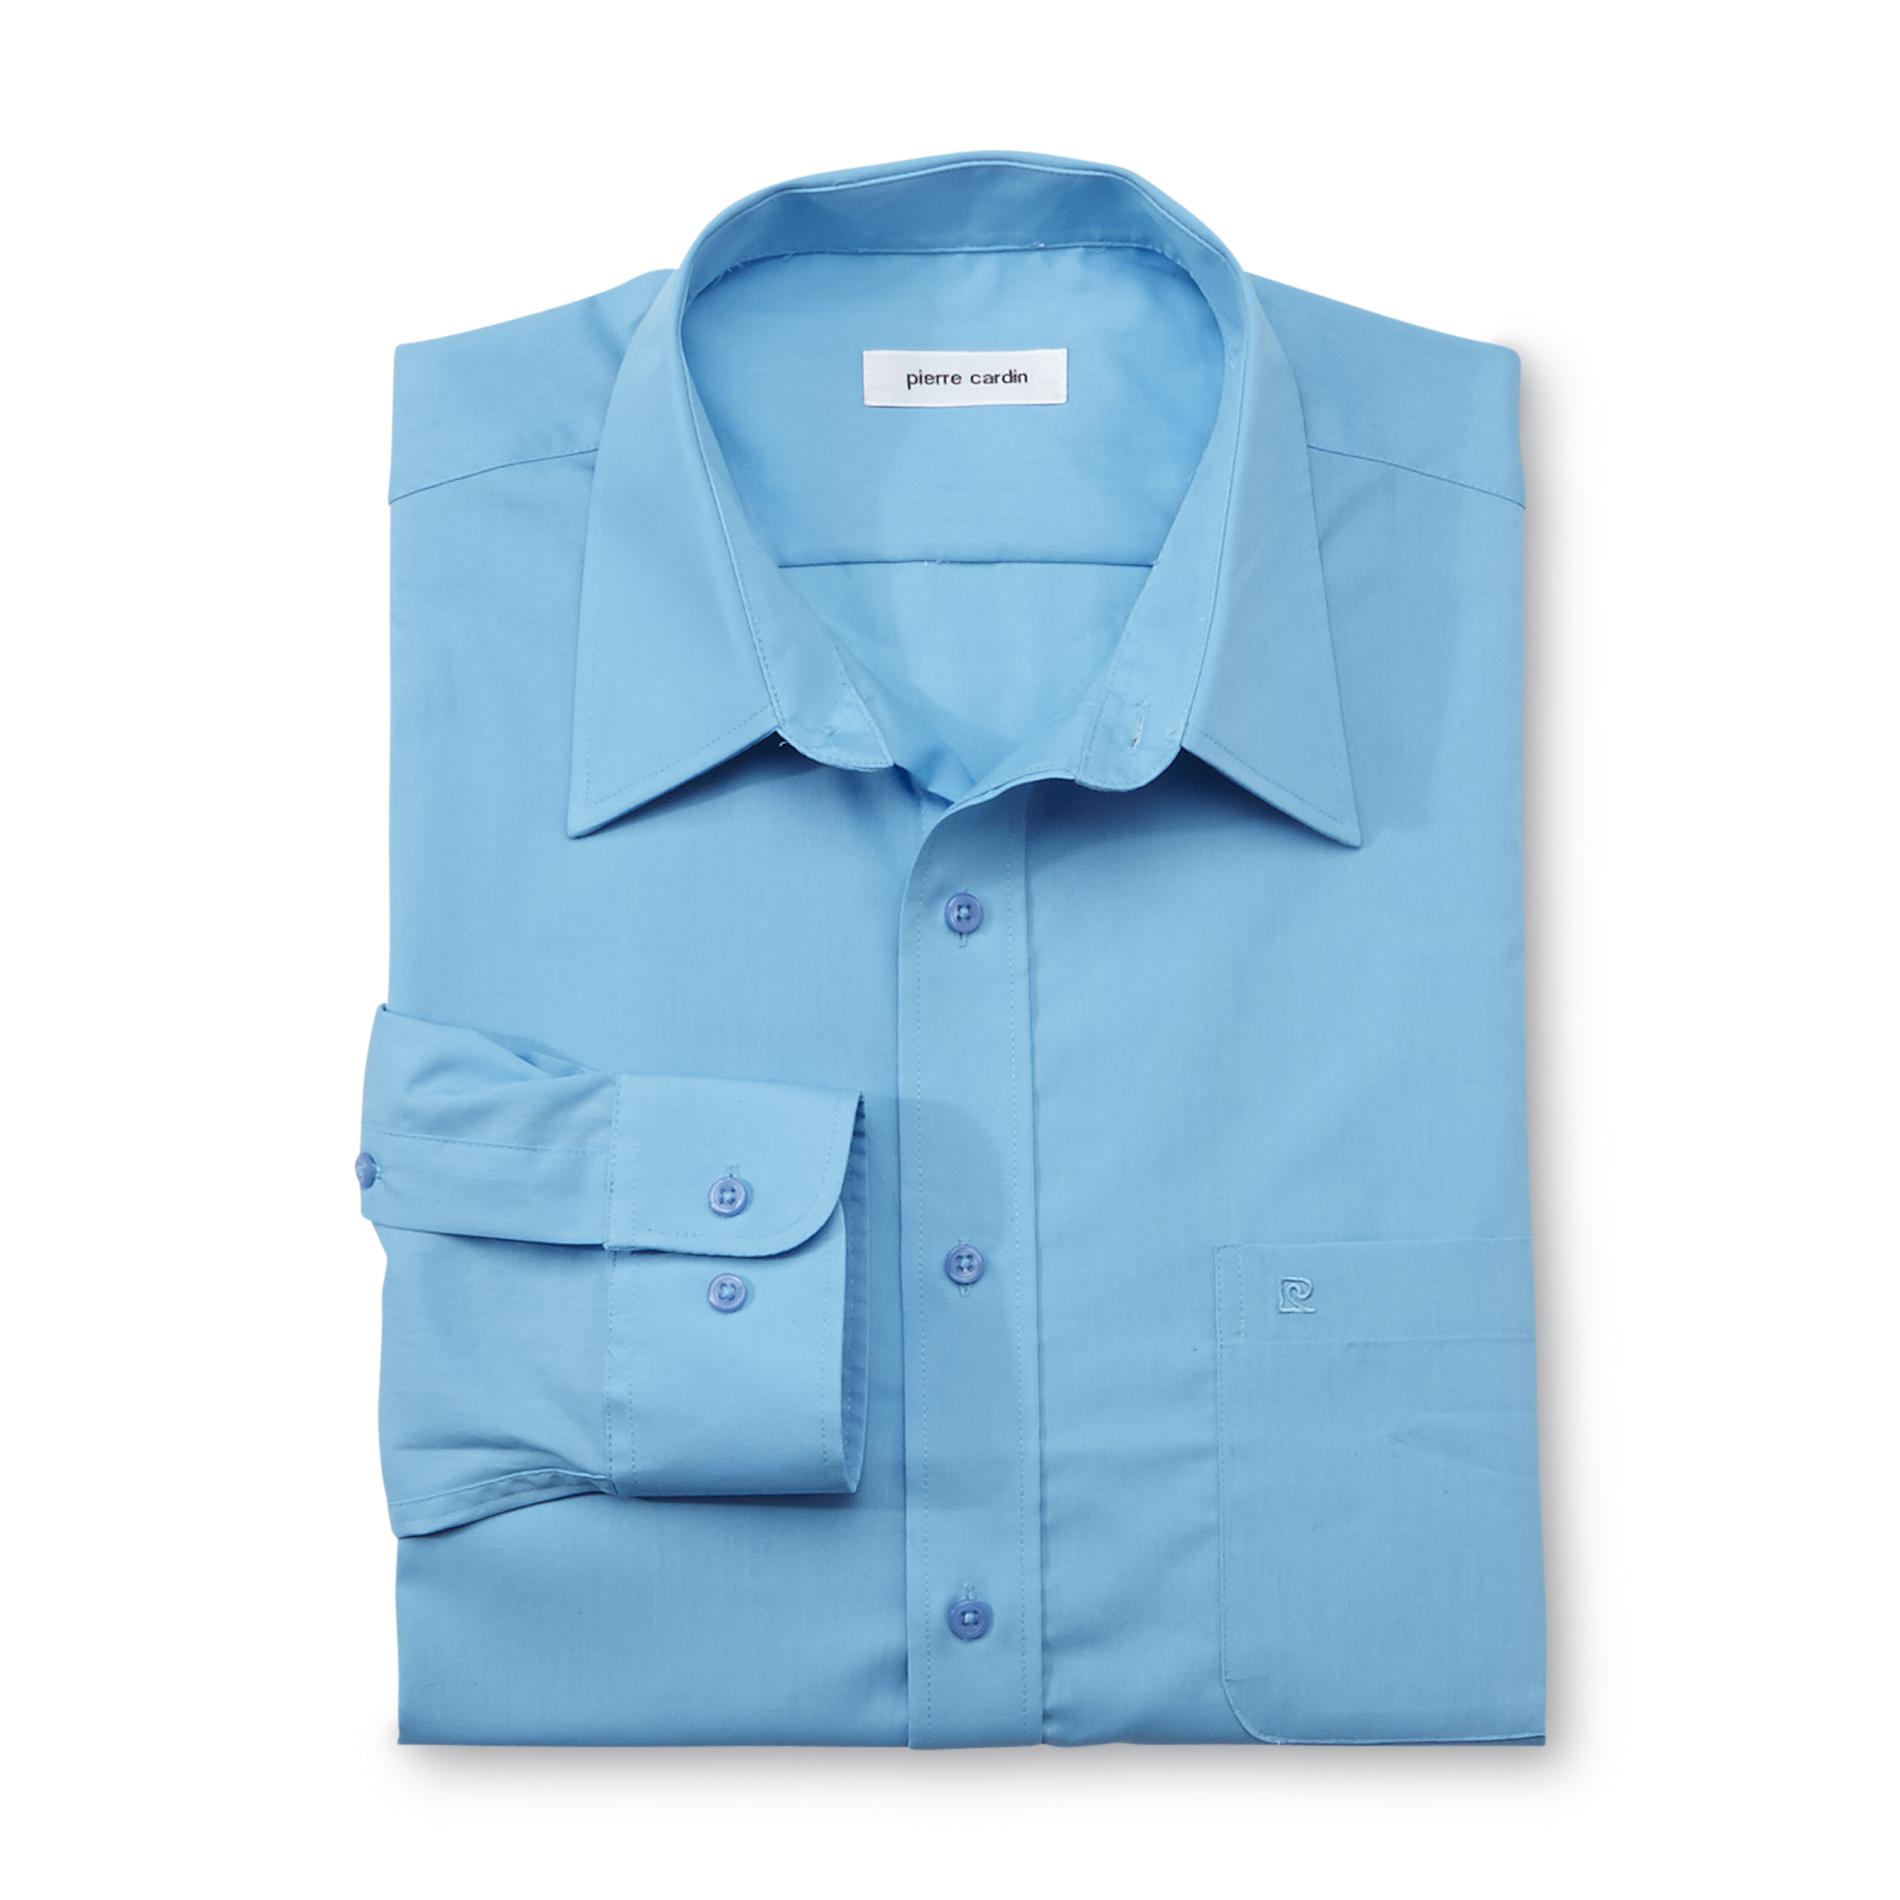 Pierre Cardin Men's Regular Fit Long-Sleeve Shirt